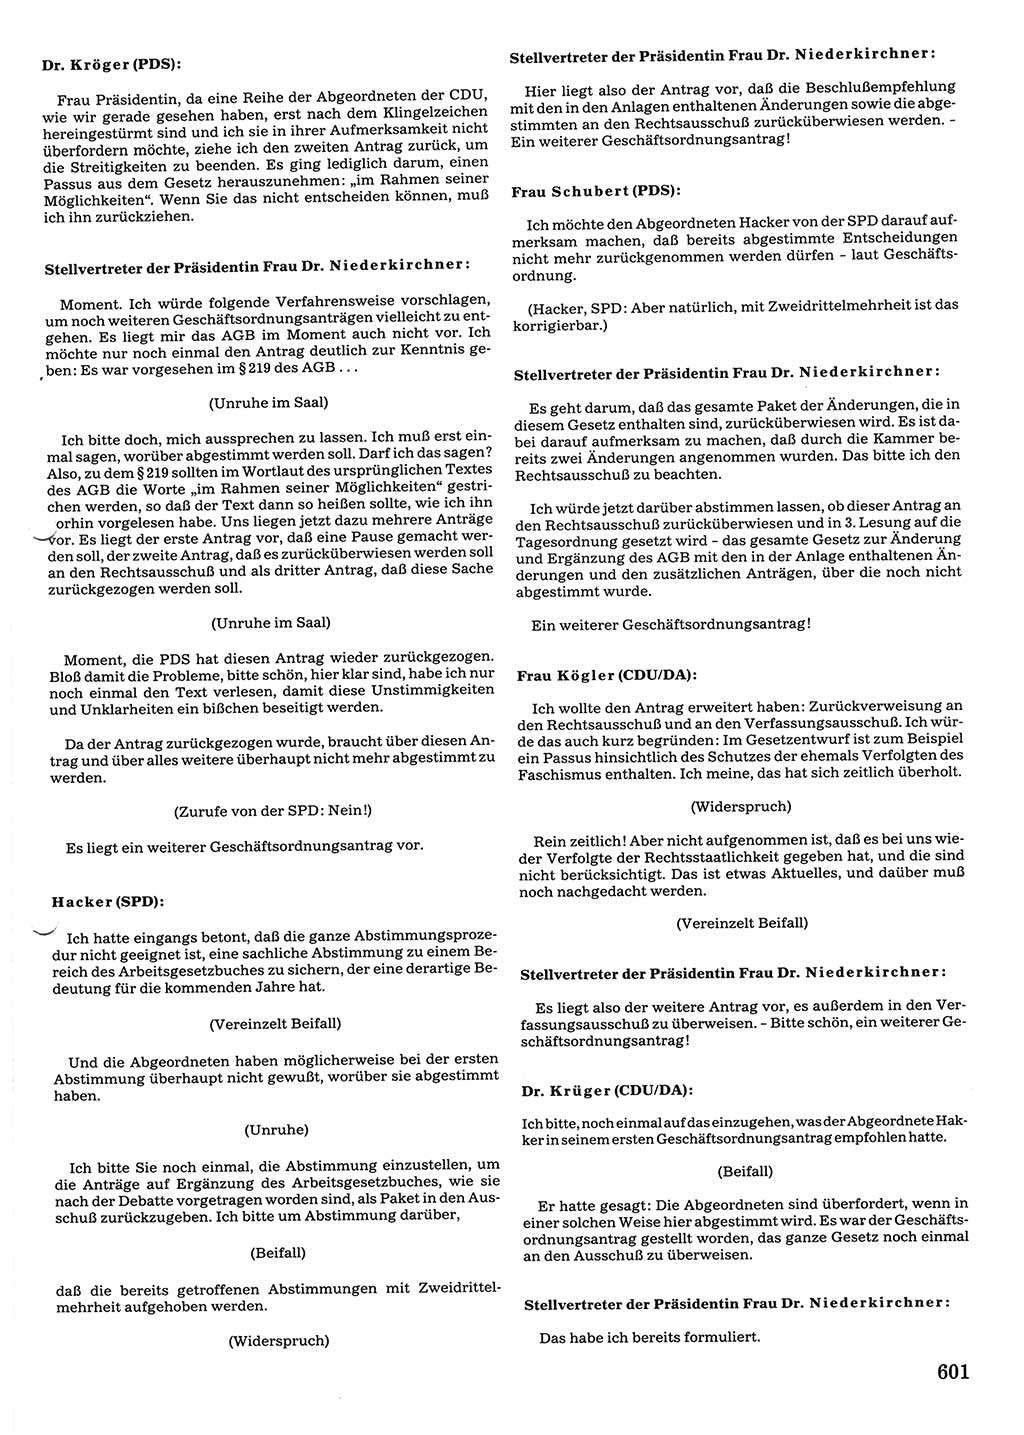 Tagungen der Volkskammer (VK) der Deutschen Demokratischen Republik (DDR), 10. Wahlperiode 1990, Seite 601 (VK. DDR 10. WP. 1990, Prot. Tg. 1-38, 5.4.-2.10.1990, S. 601)